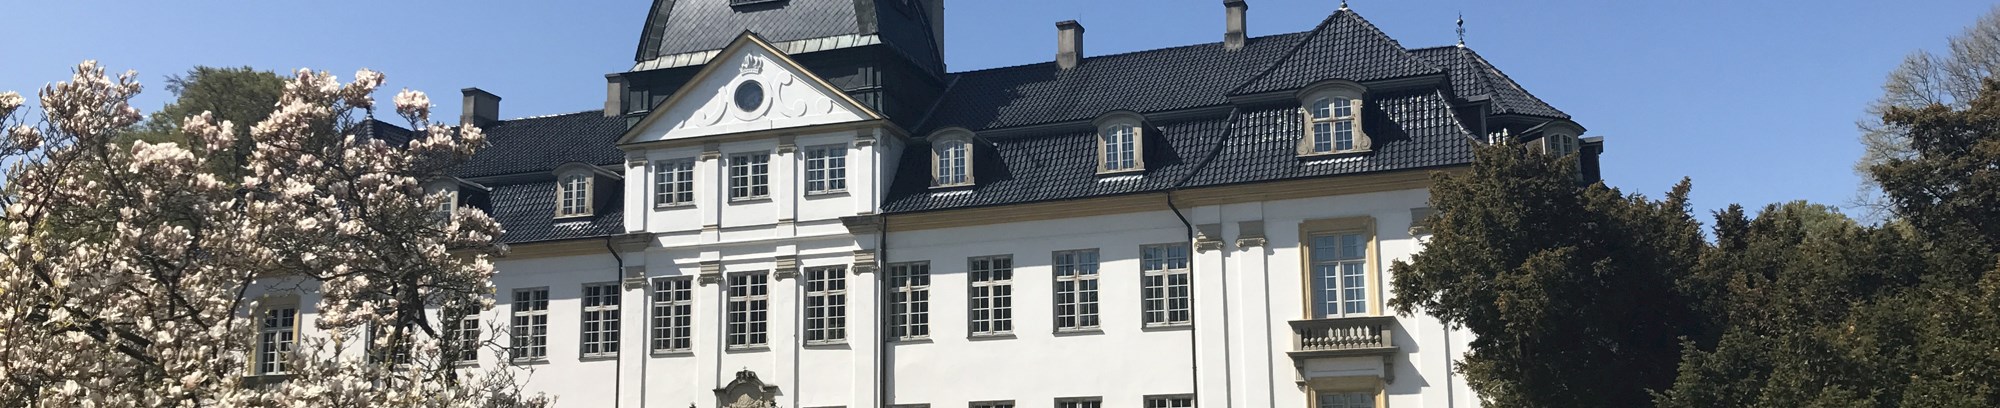 Besøg Charlottenlund Slot med FOF Nordsjælland